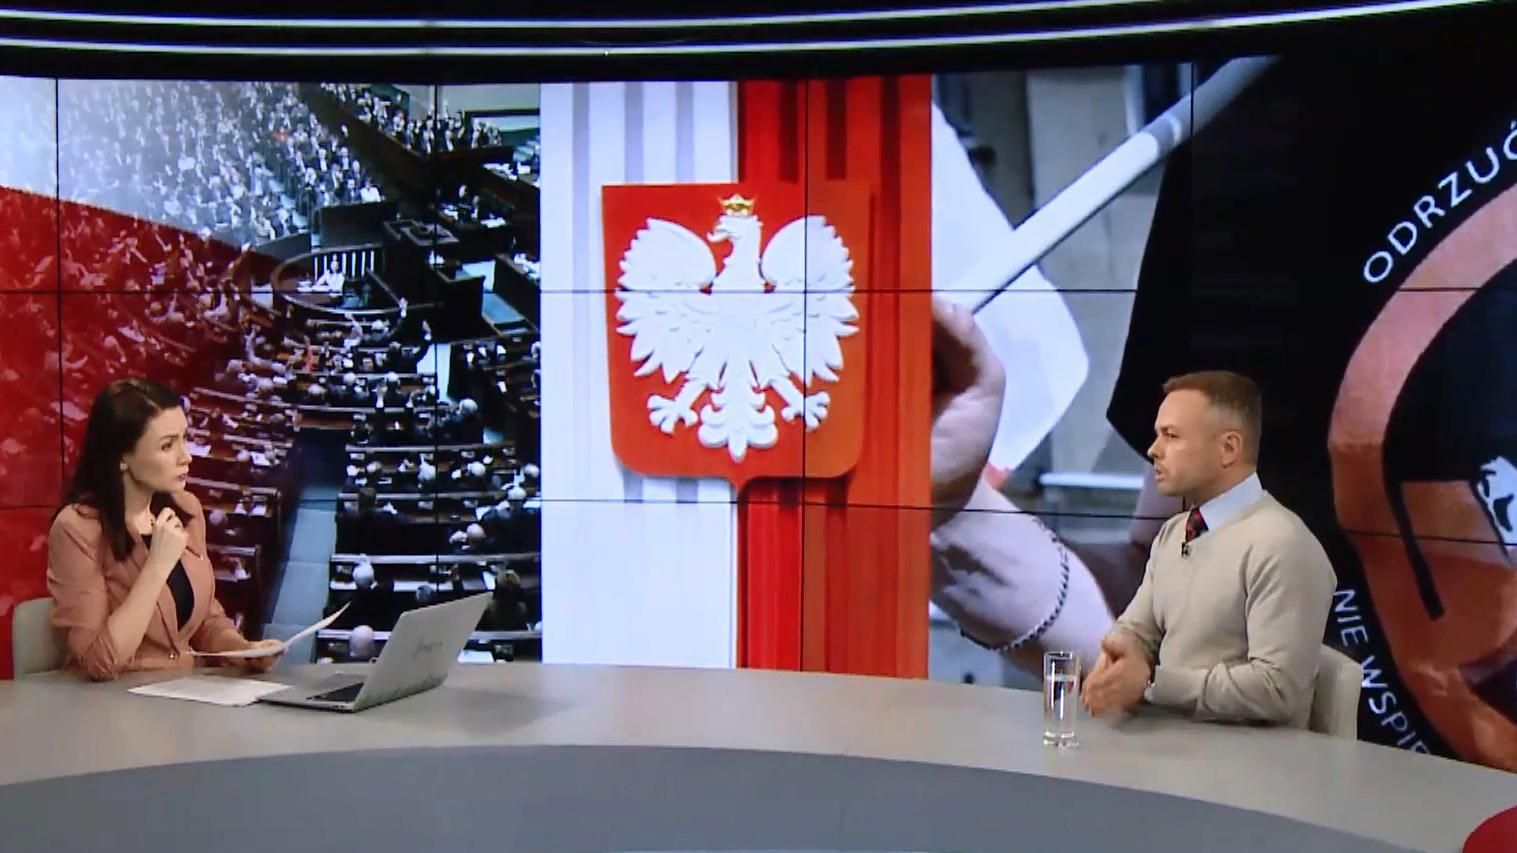 Польща, прийнявши "антибандерівський" закон, вирішила копіювати дії Росії, – історик Олександр Зінченко